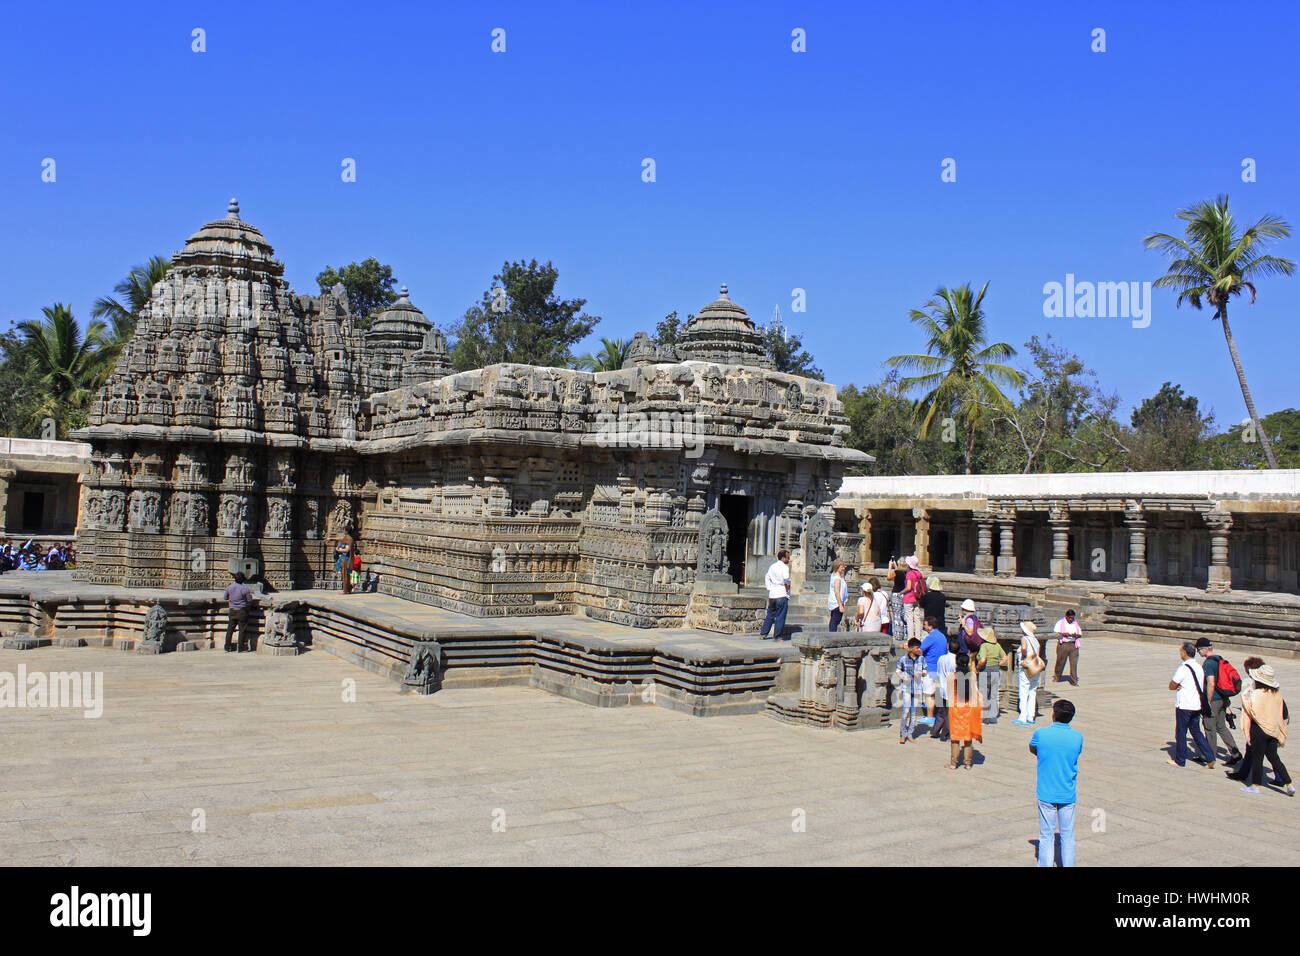 Vue de côté du Chennakesava Temple Hoysala, Architecture, et les touristes d'admirer la complexité de la sculpture sur pierre. L'Architecture Hoysala, Somnathpur, Karna Banque D'Images